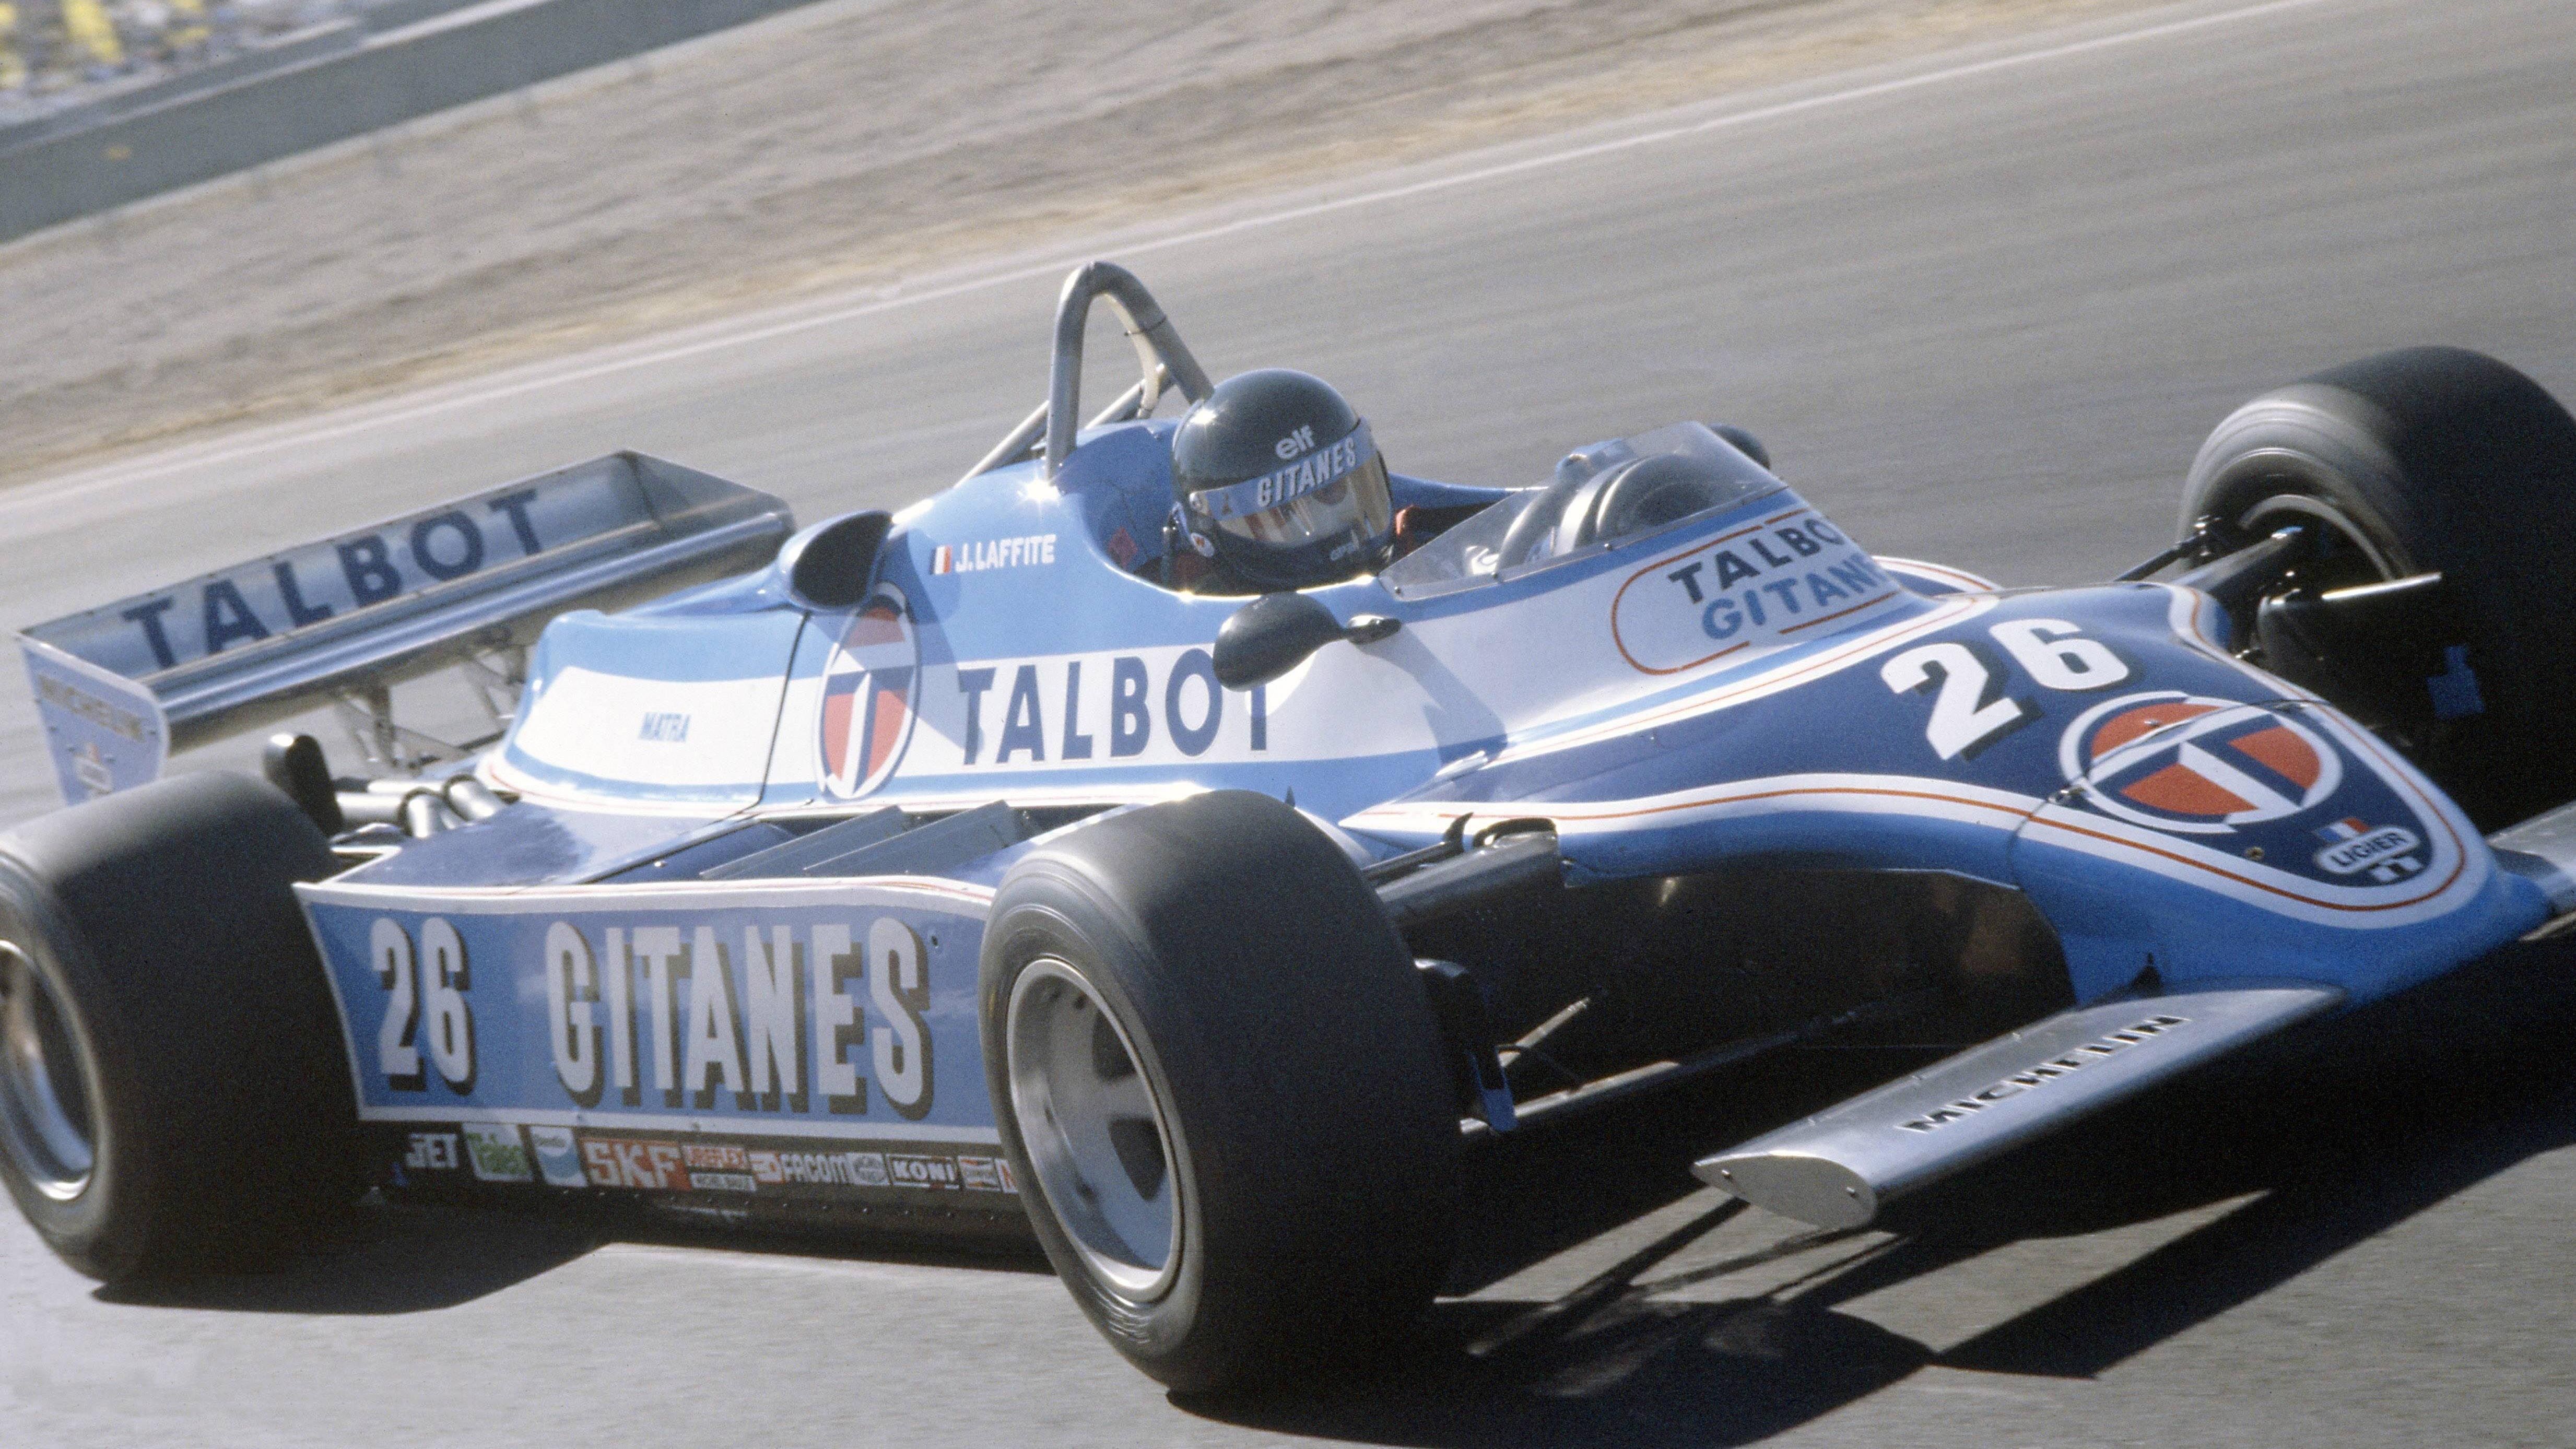 
                <strong>Platz 12: Jacques Laffite</strong><br>
                &#x2022; Alter: 42 Jahre, 7 Monate und ein Tag <br>&#x2022; Grand Prix der USA: 1986<br>&#x2022; Position: Zweiter Platz<br>
              